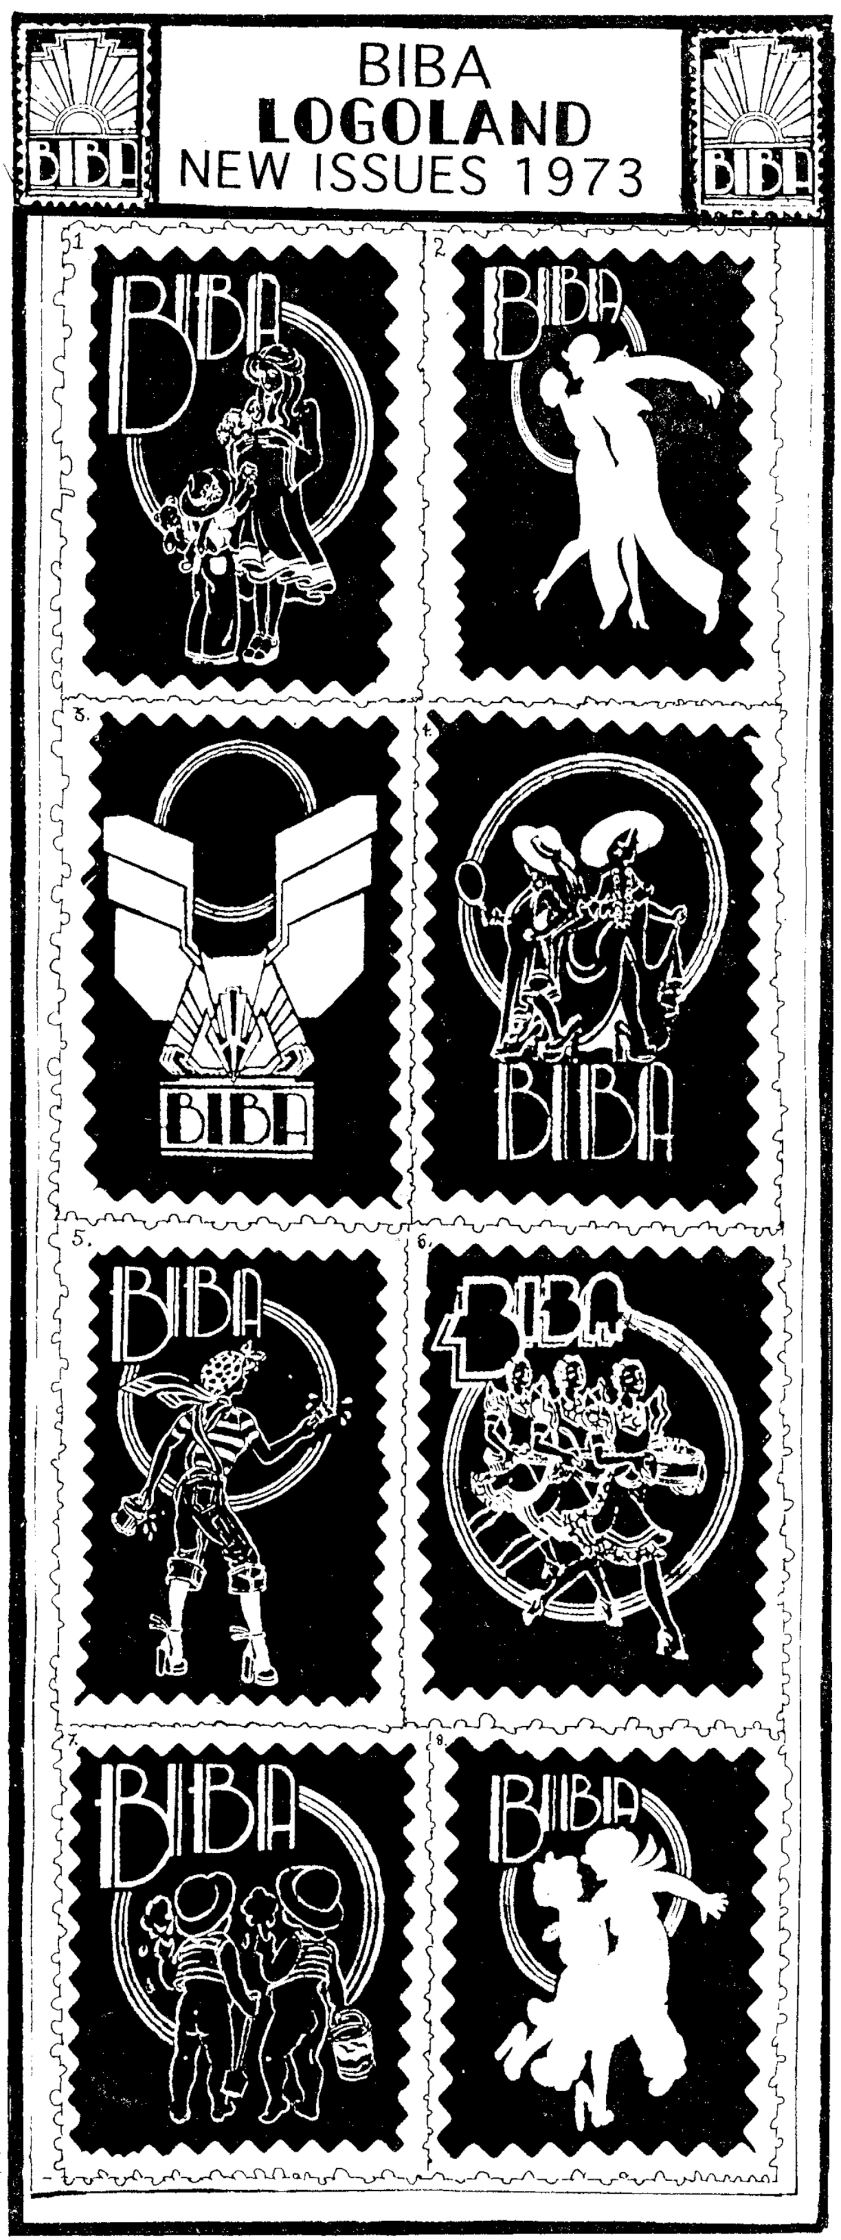 Biba Logos / In Biba